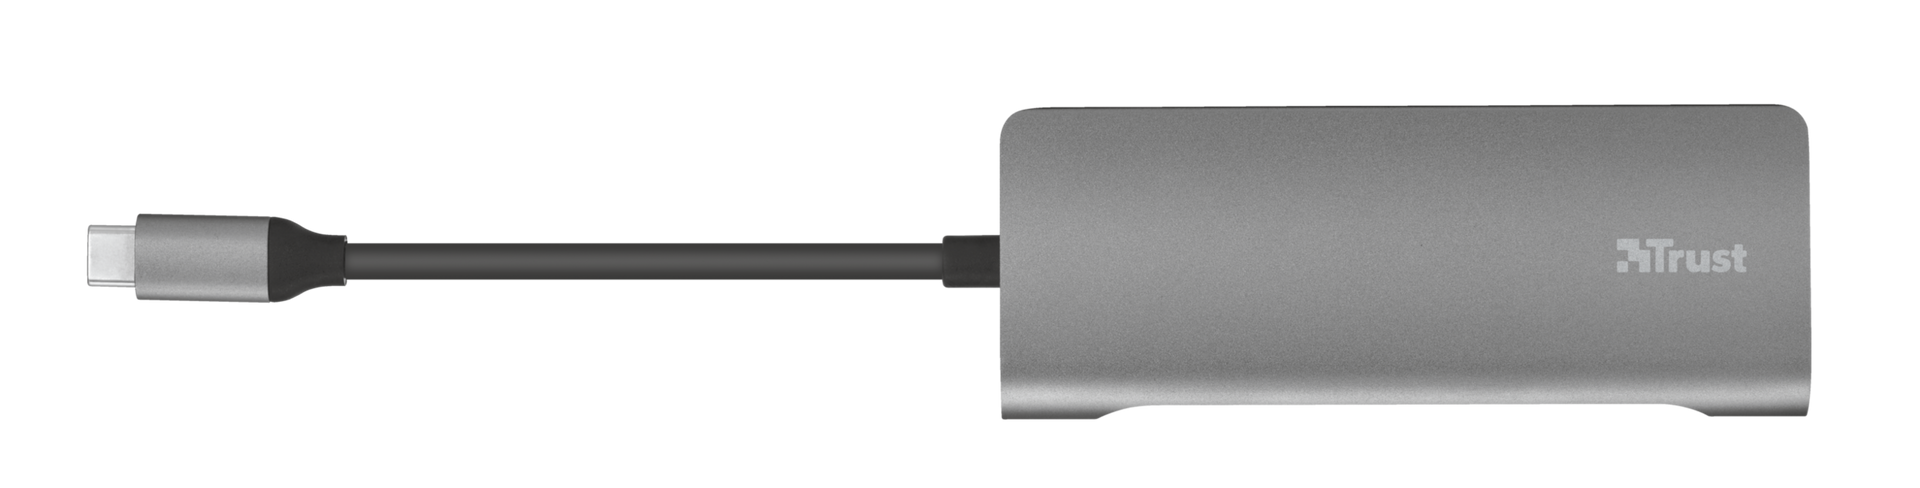 Dalyx Aluminium 7-in-1 USB-C Multiport Adapter-Top